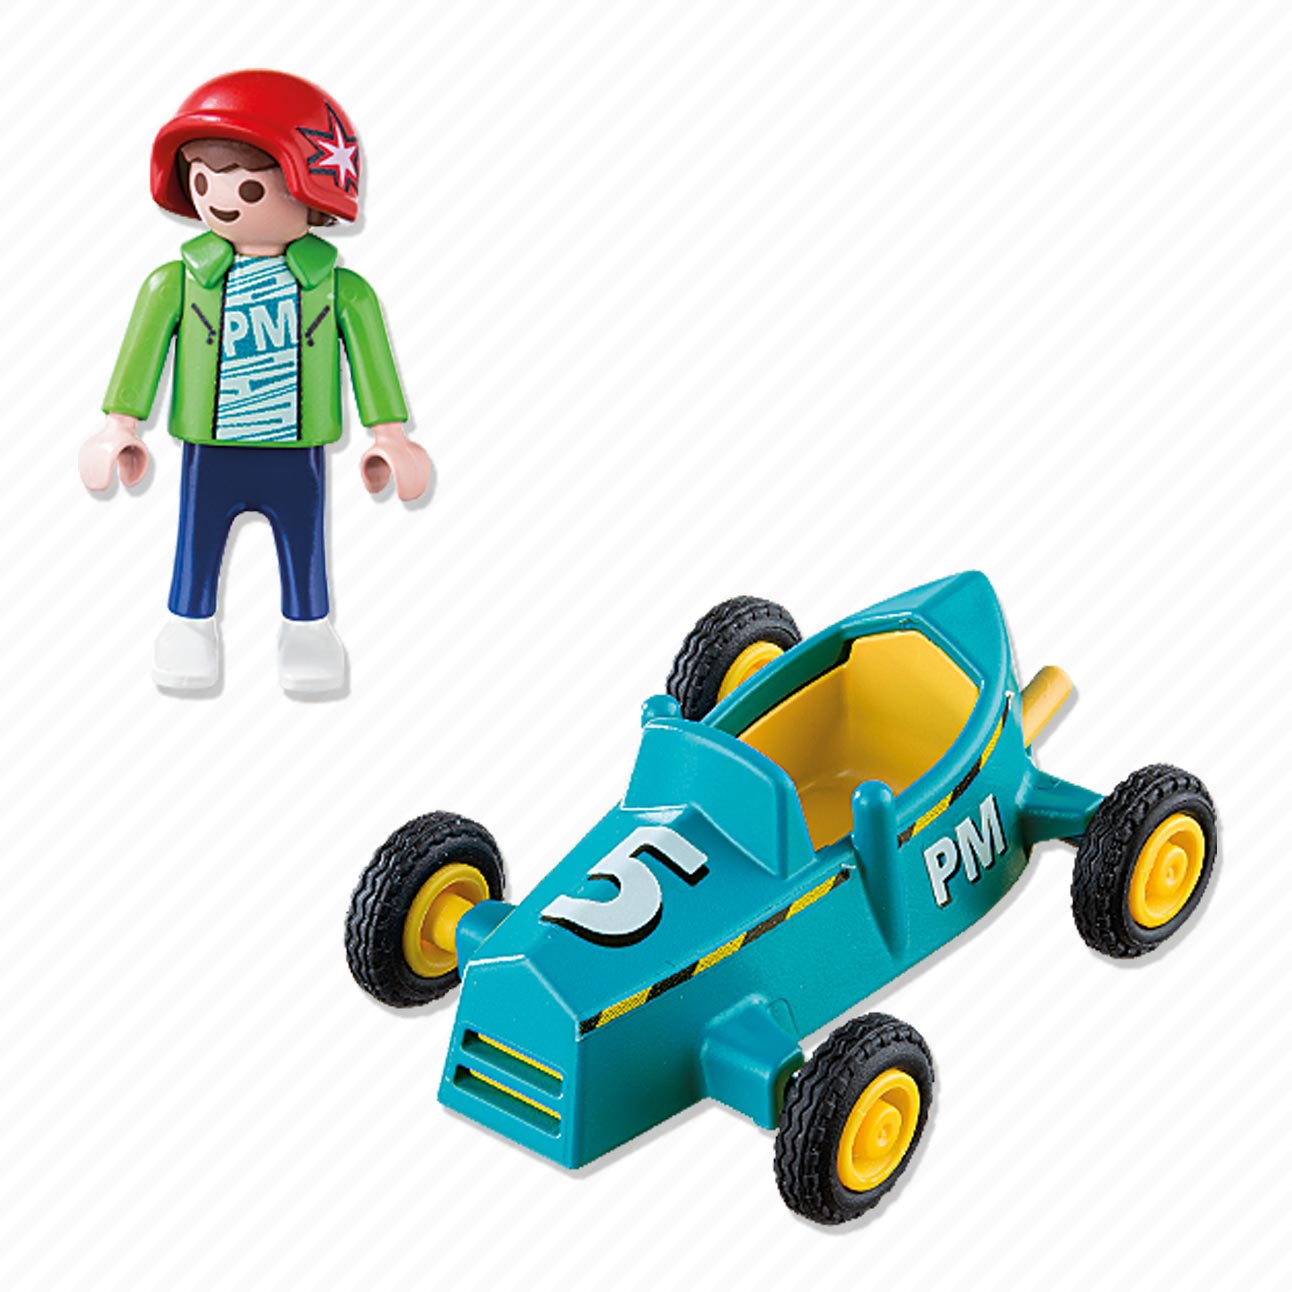 Playmobil 5382 Jongen met Kart